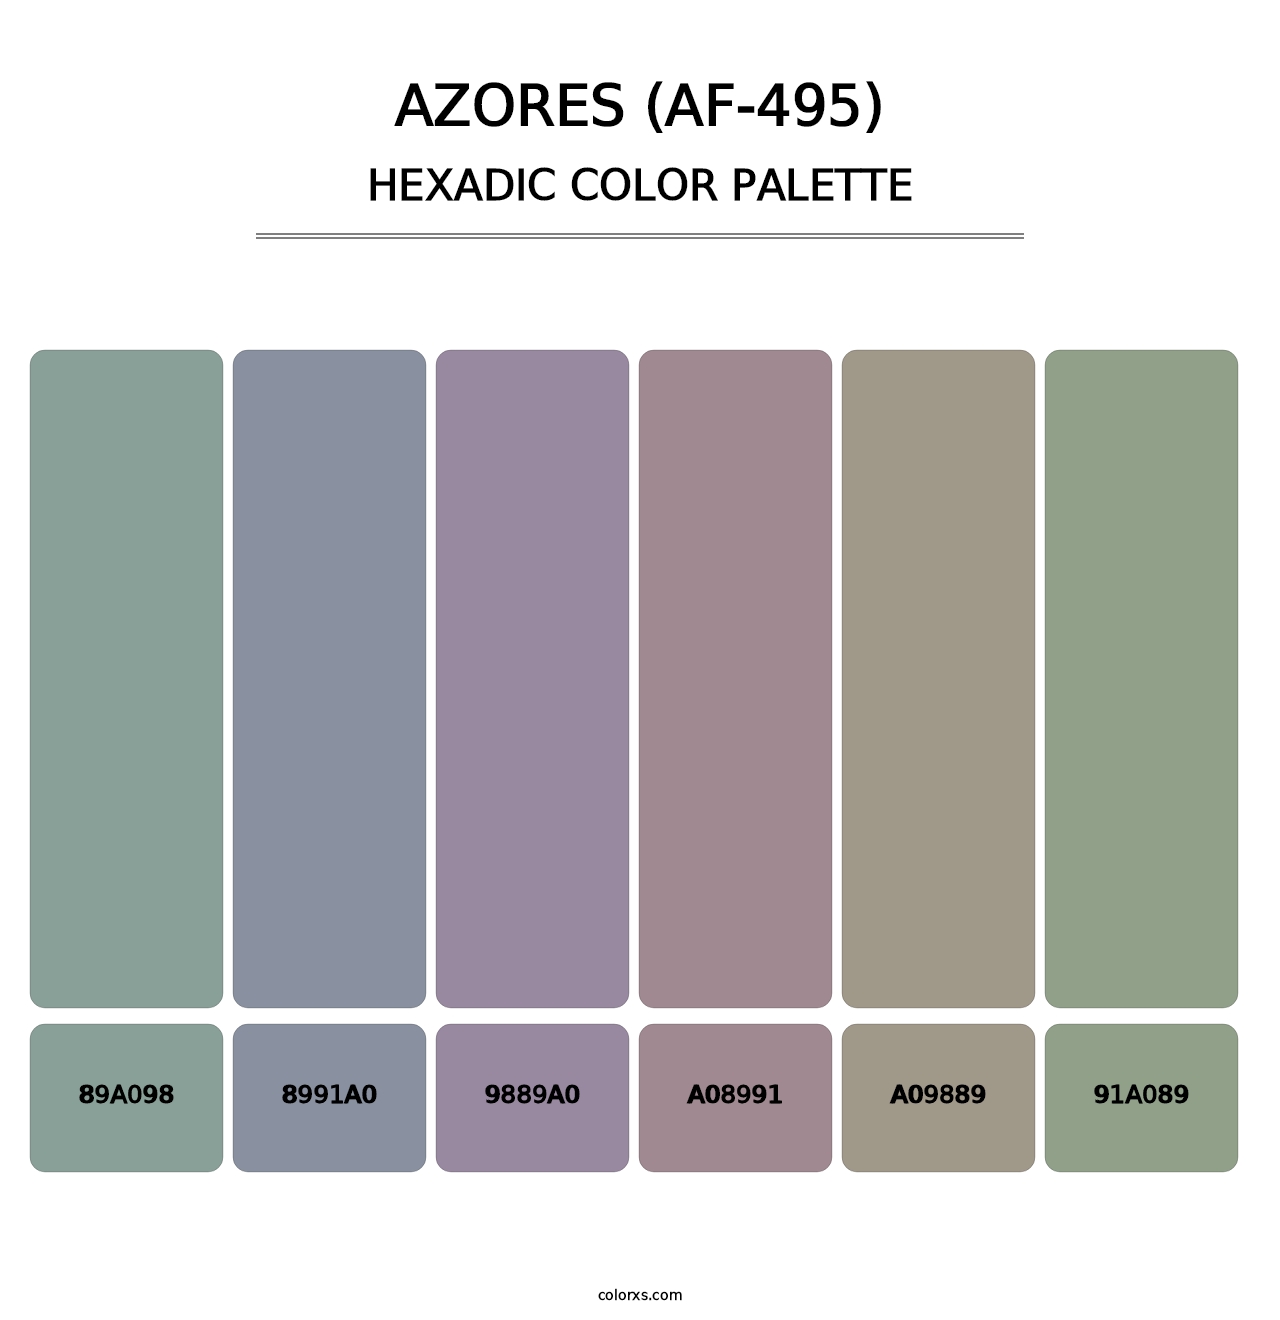 Azores (AF-495) - Hexadic Color Palette